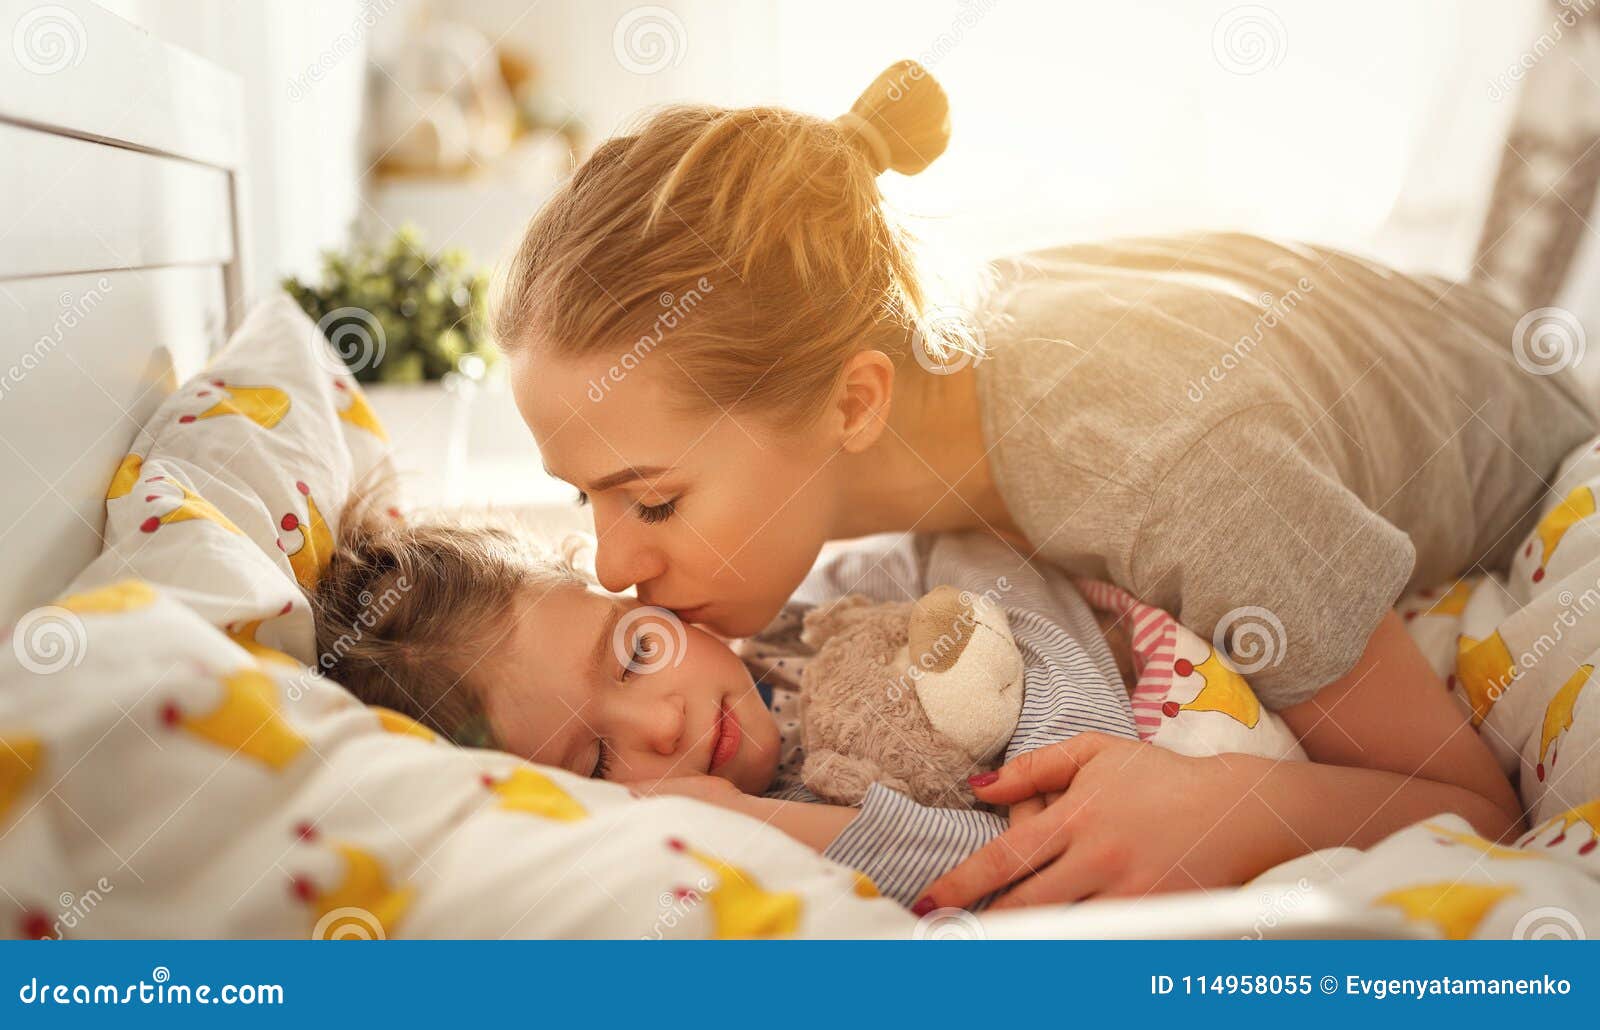 Мать будит сына. Разбудить ребенка утром. Пробуждение младенца. Мама с ребенком перед сном. Мама будит утром ребенка.